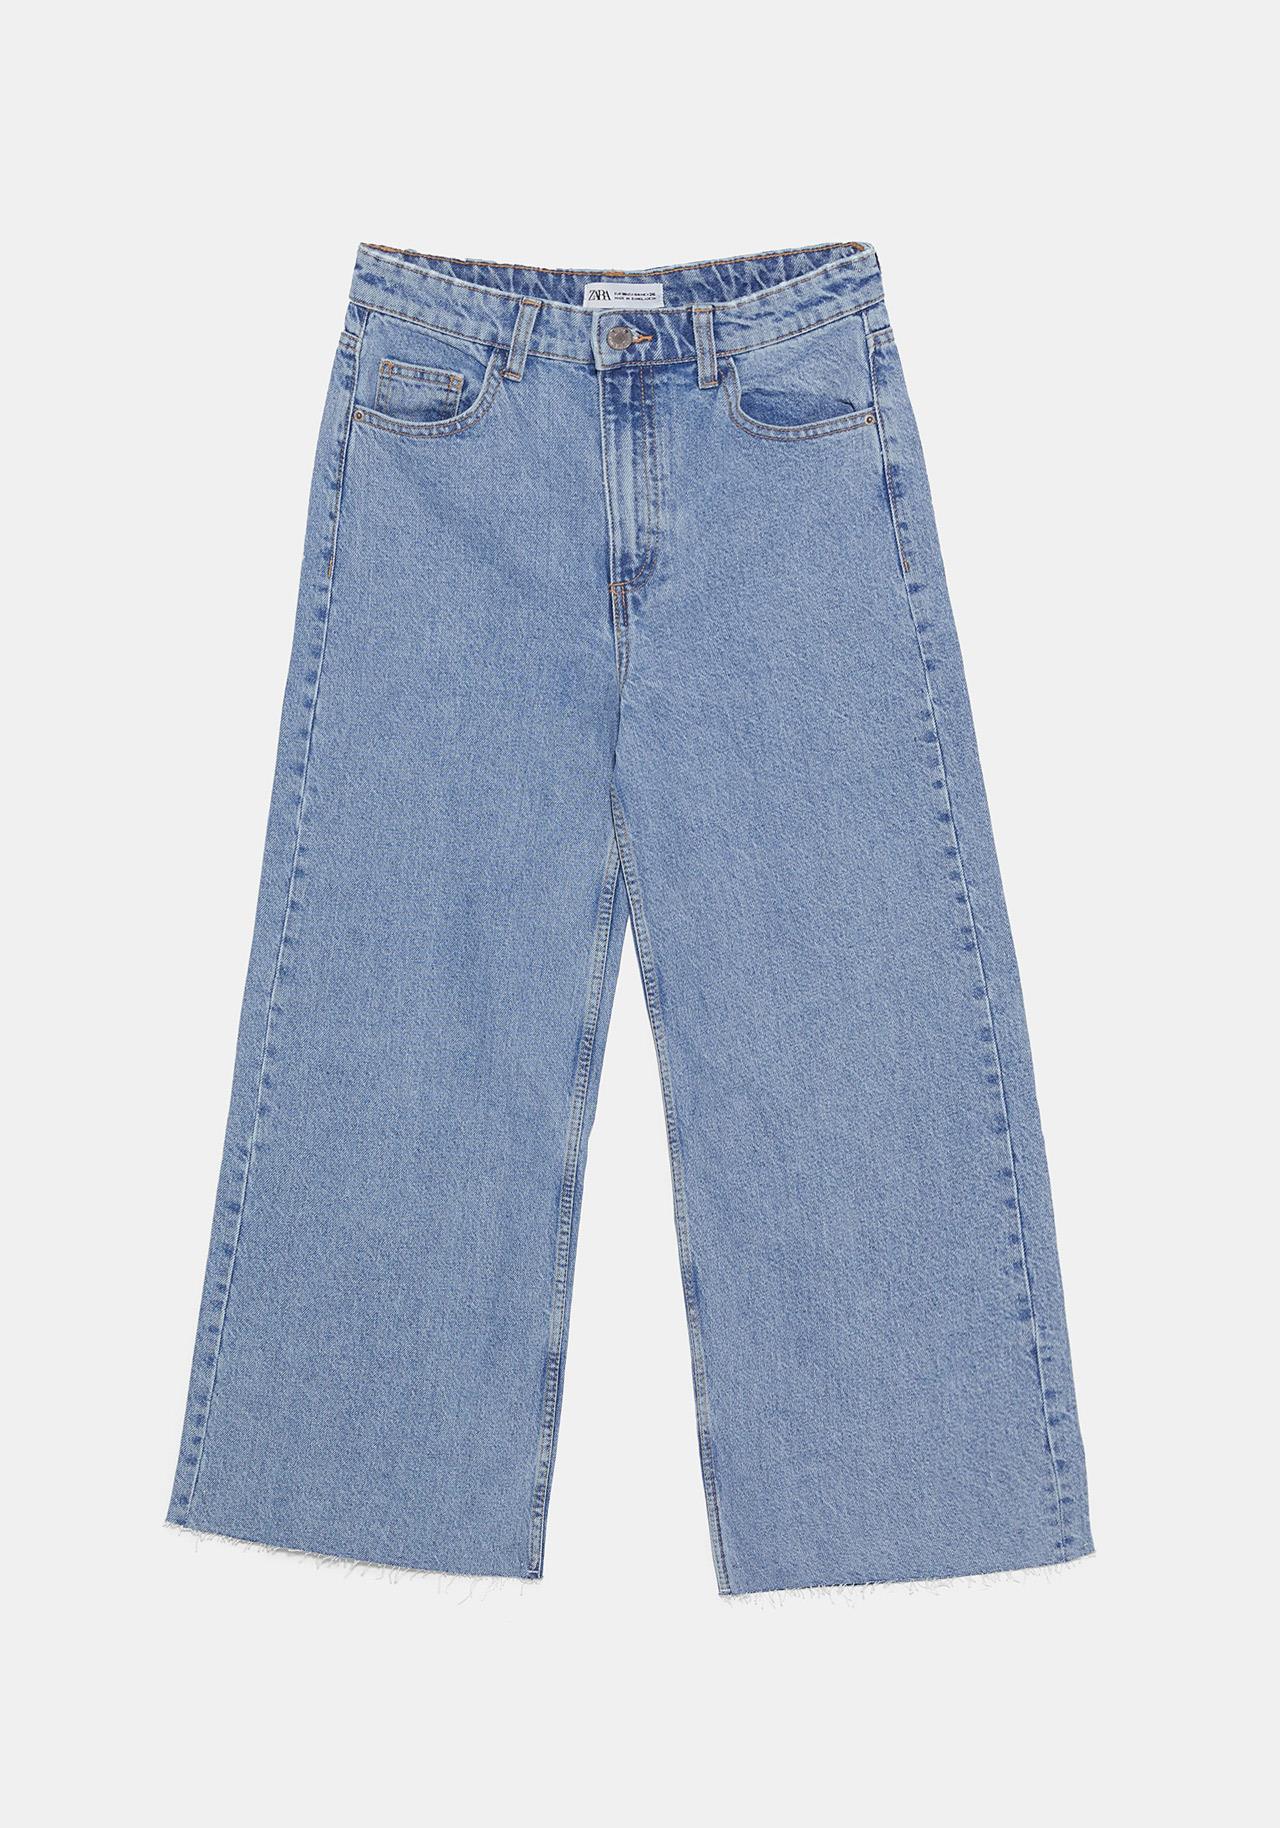 blazer zara trabajo navidad jeans Zara, 19,95€